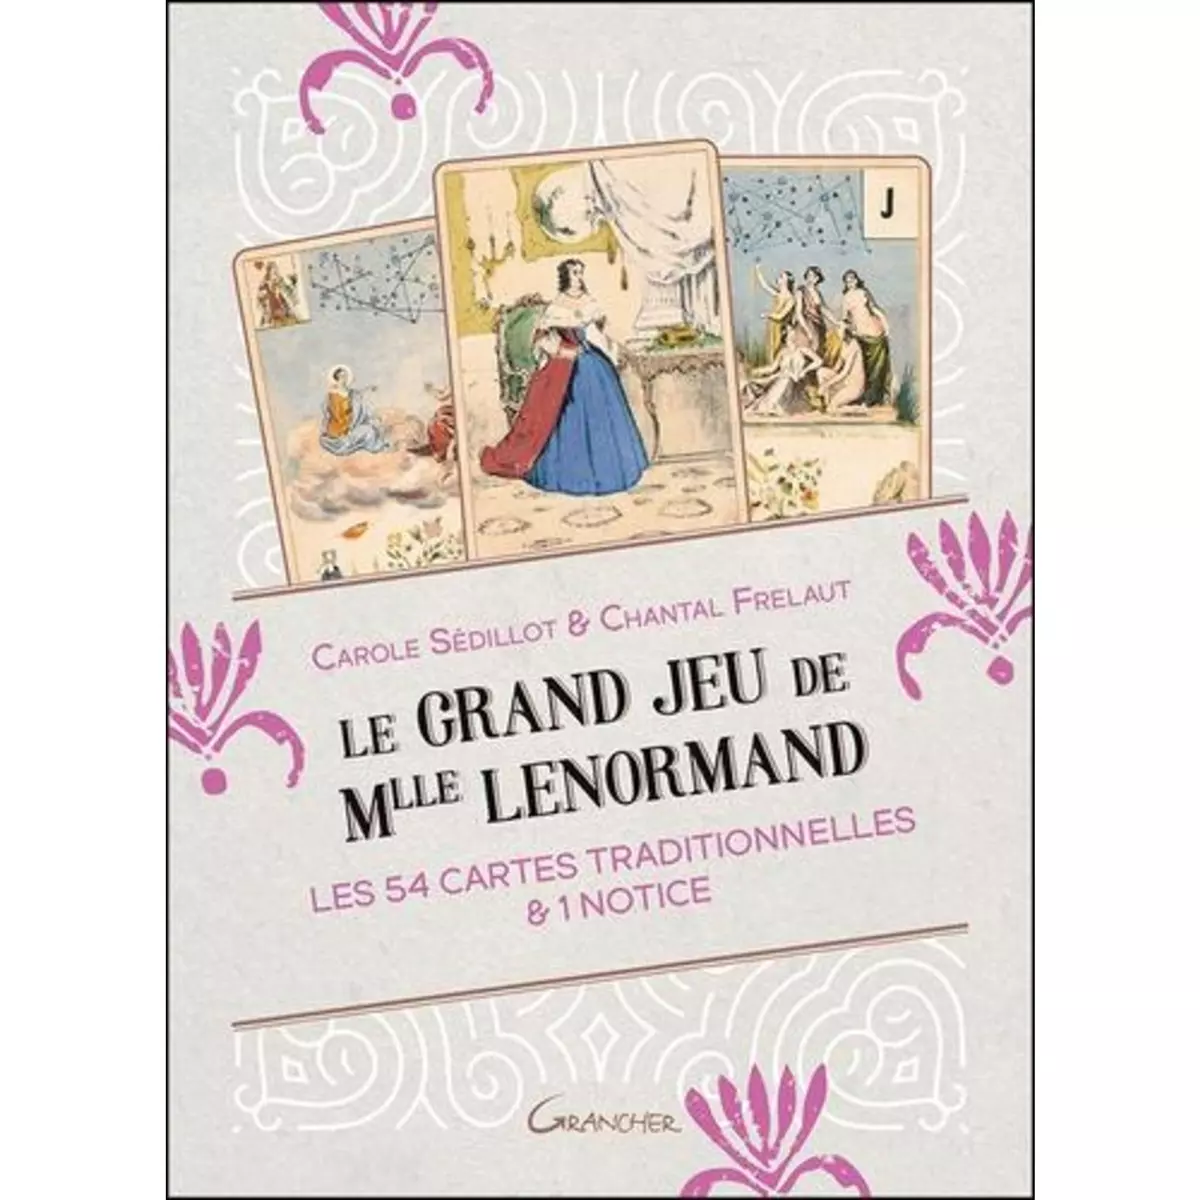  LE GRAND JEU DE MLLE LENORMAND. LES 54 CARTES TRADITIONNELLES & 1 NOTICE, Sédillot Carole